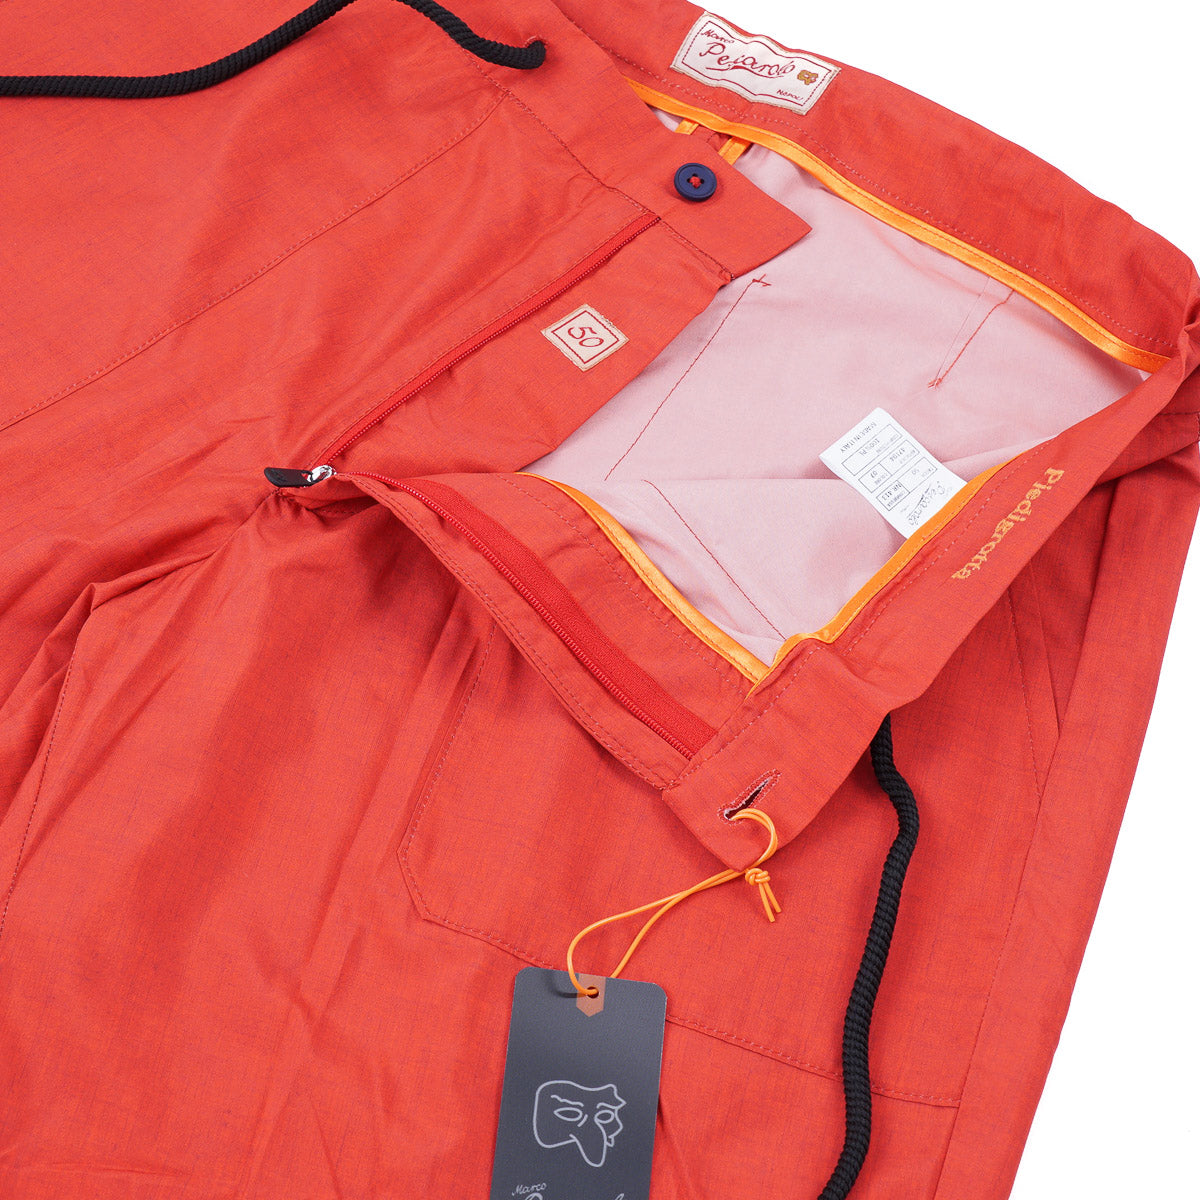 Marco Pescarolo Lightweight Tech Fabric Shorts - Top Shelf Apparel